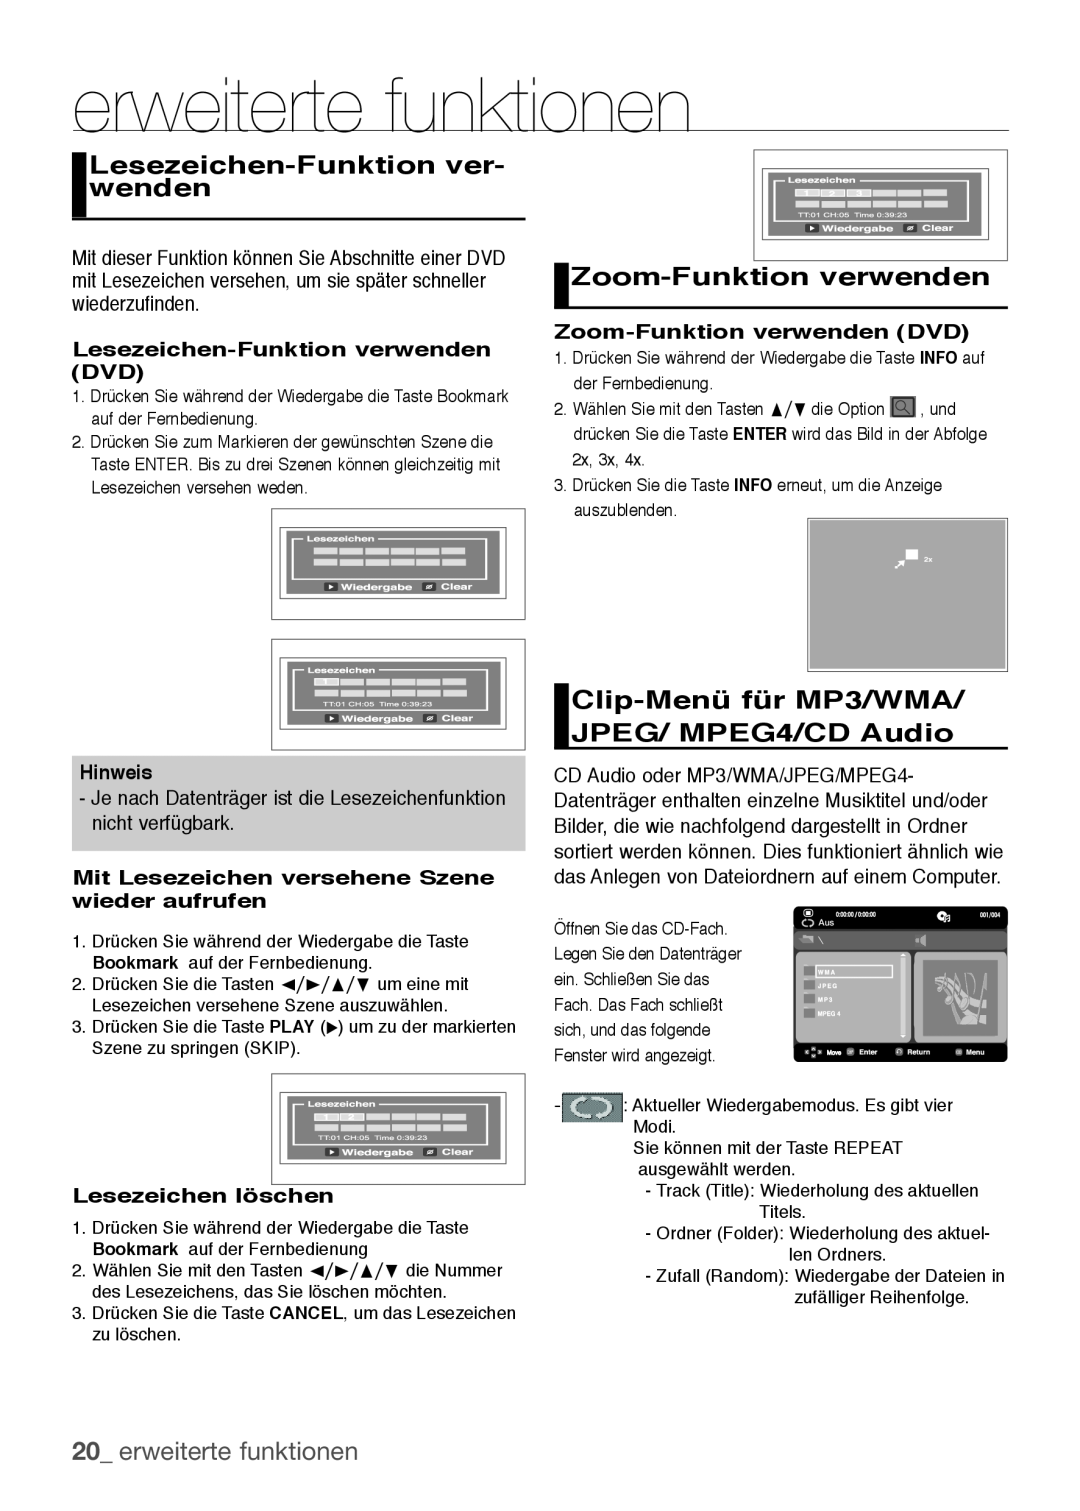 Samsung DVD-H1080/EDC manual Lesezeichen-Funktion ver- wenden, Zoom-Funktion verwenden, erweiterte funktionen, Hinweis 